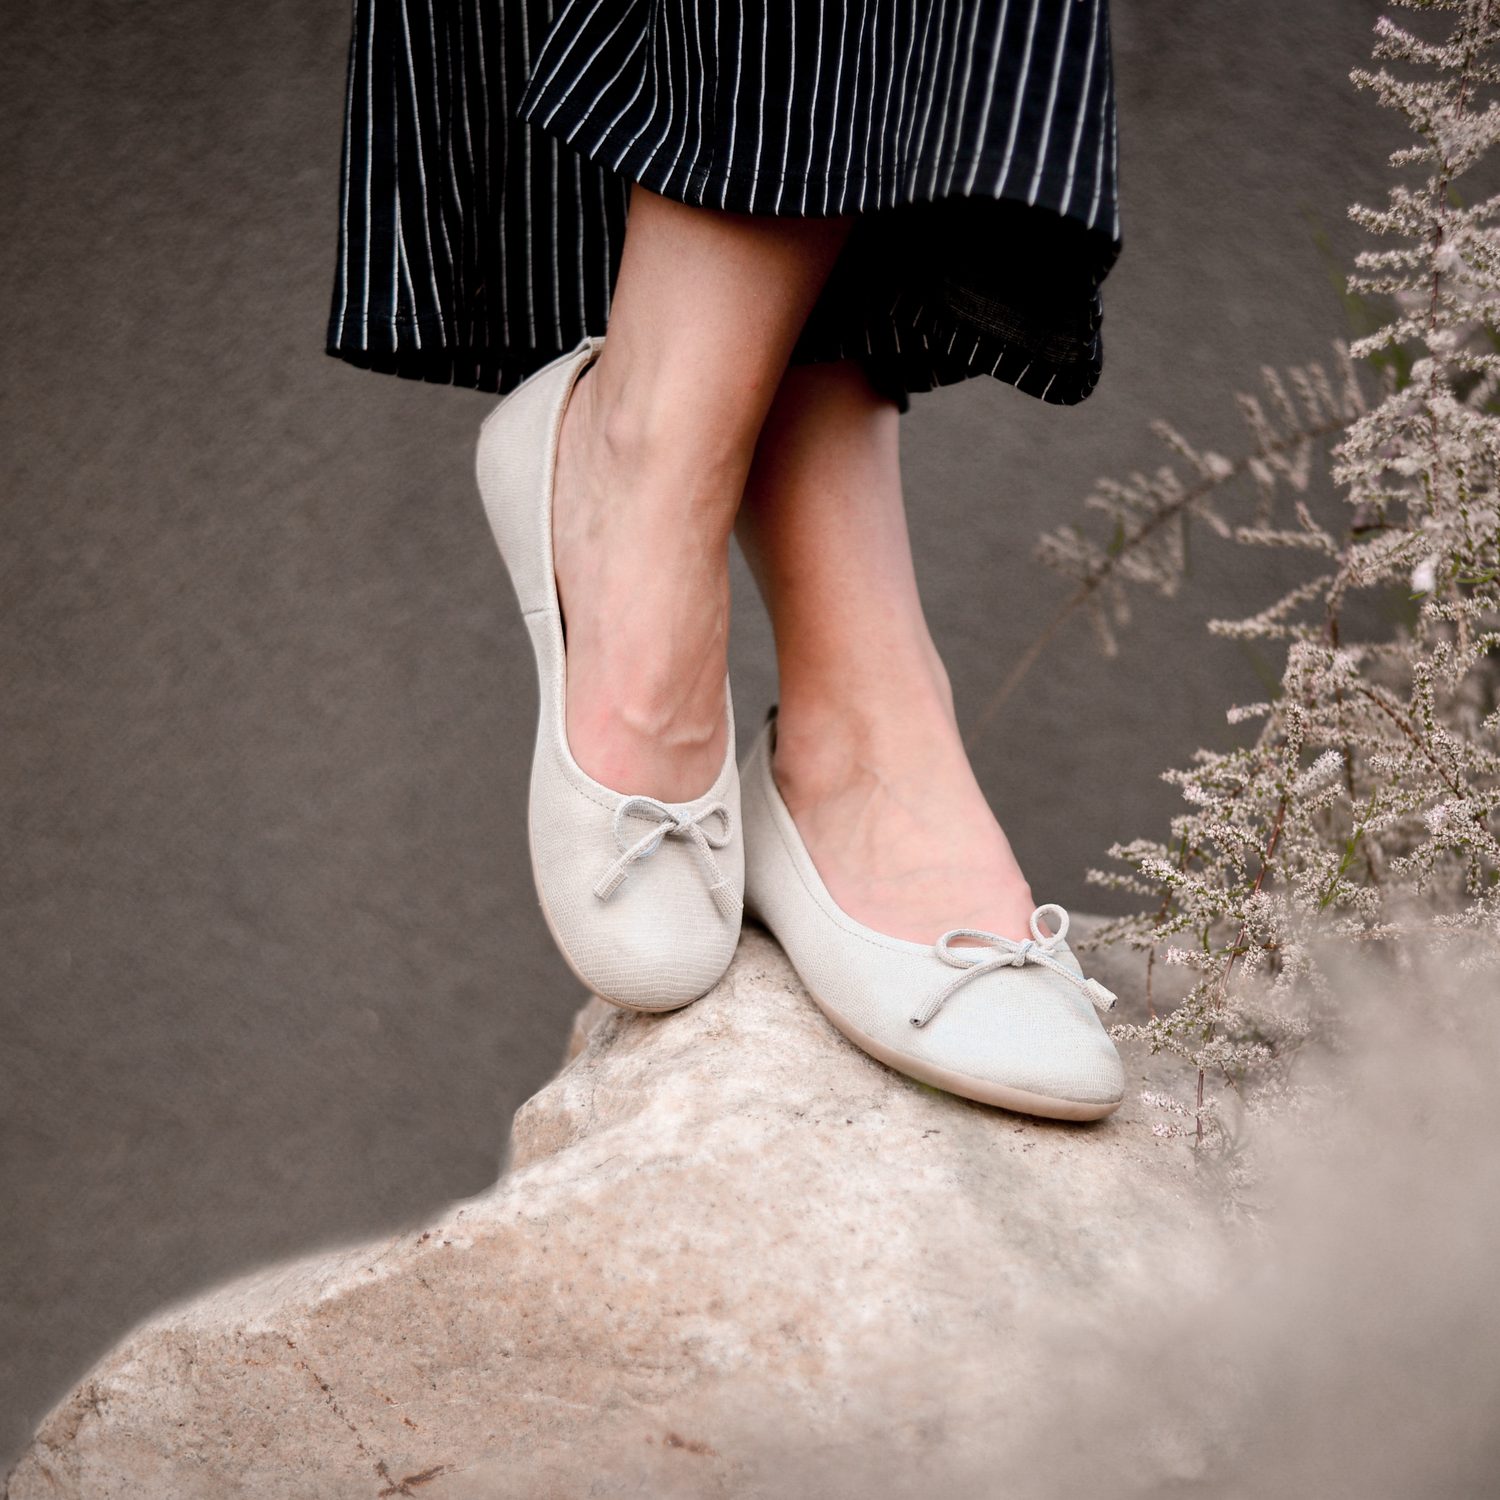 naBOSo – 6 důvodů, proč nosit barefoot boty – Zažijte pohodlí barefoot bot.